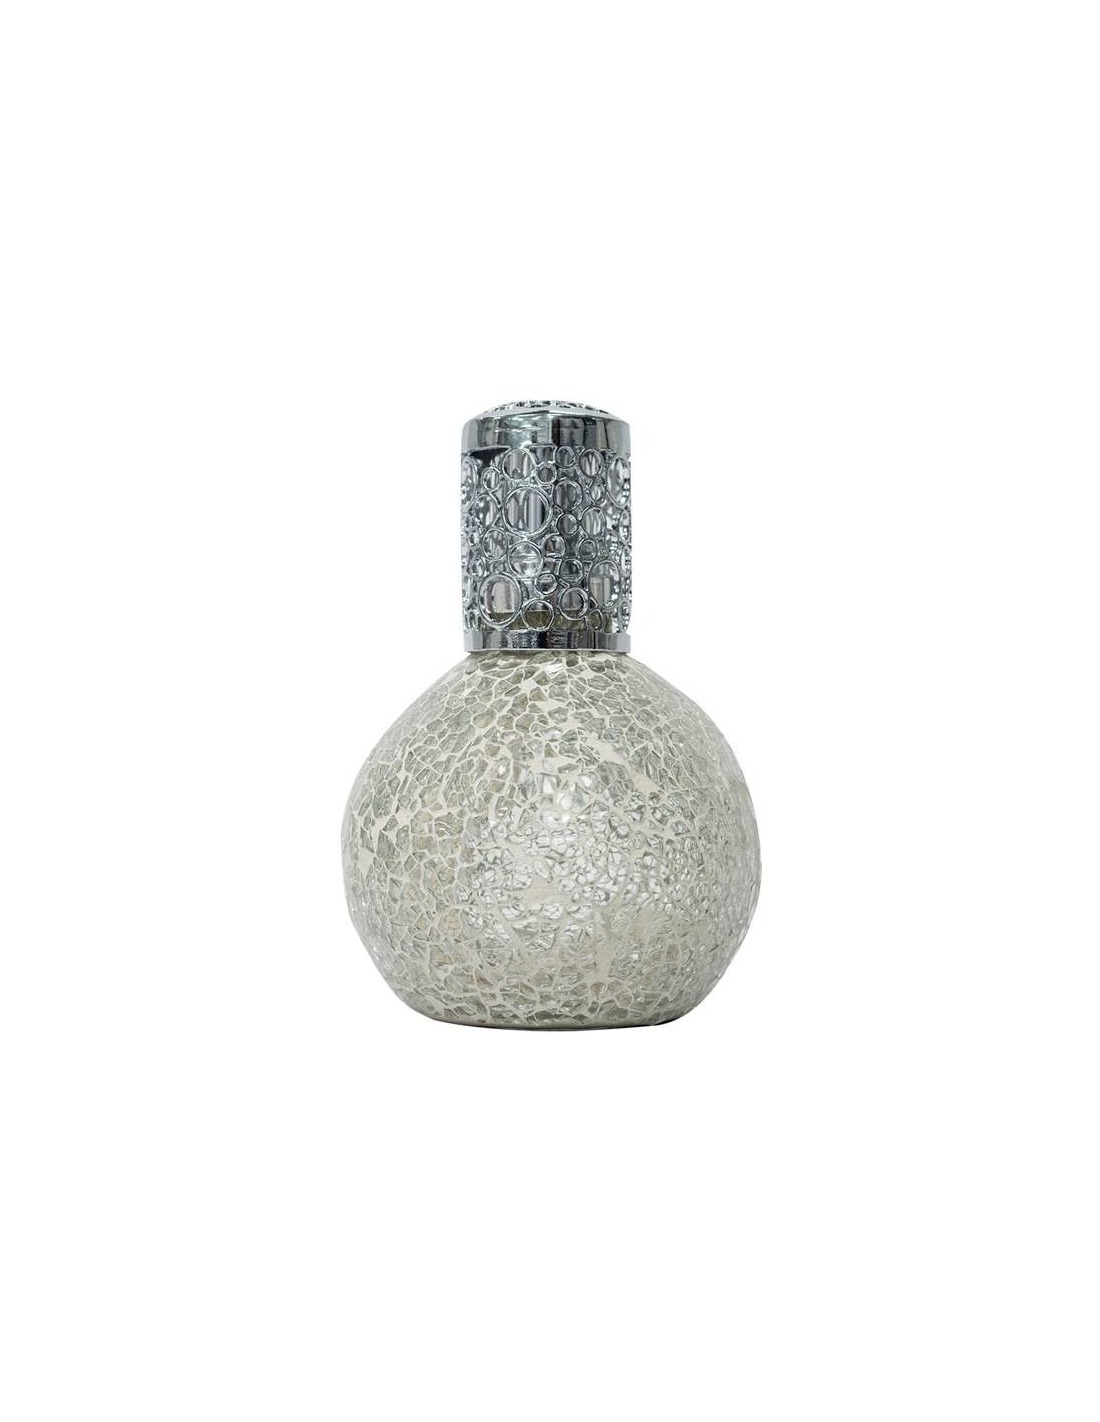 Lámpara catalítica artesanal con acabado porcelánico.